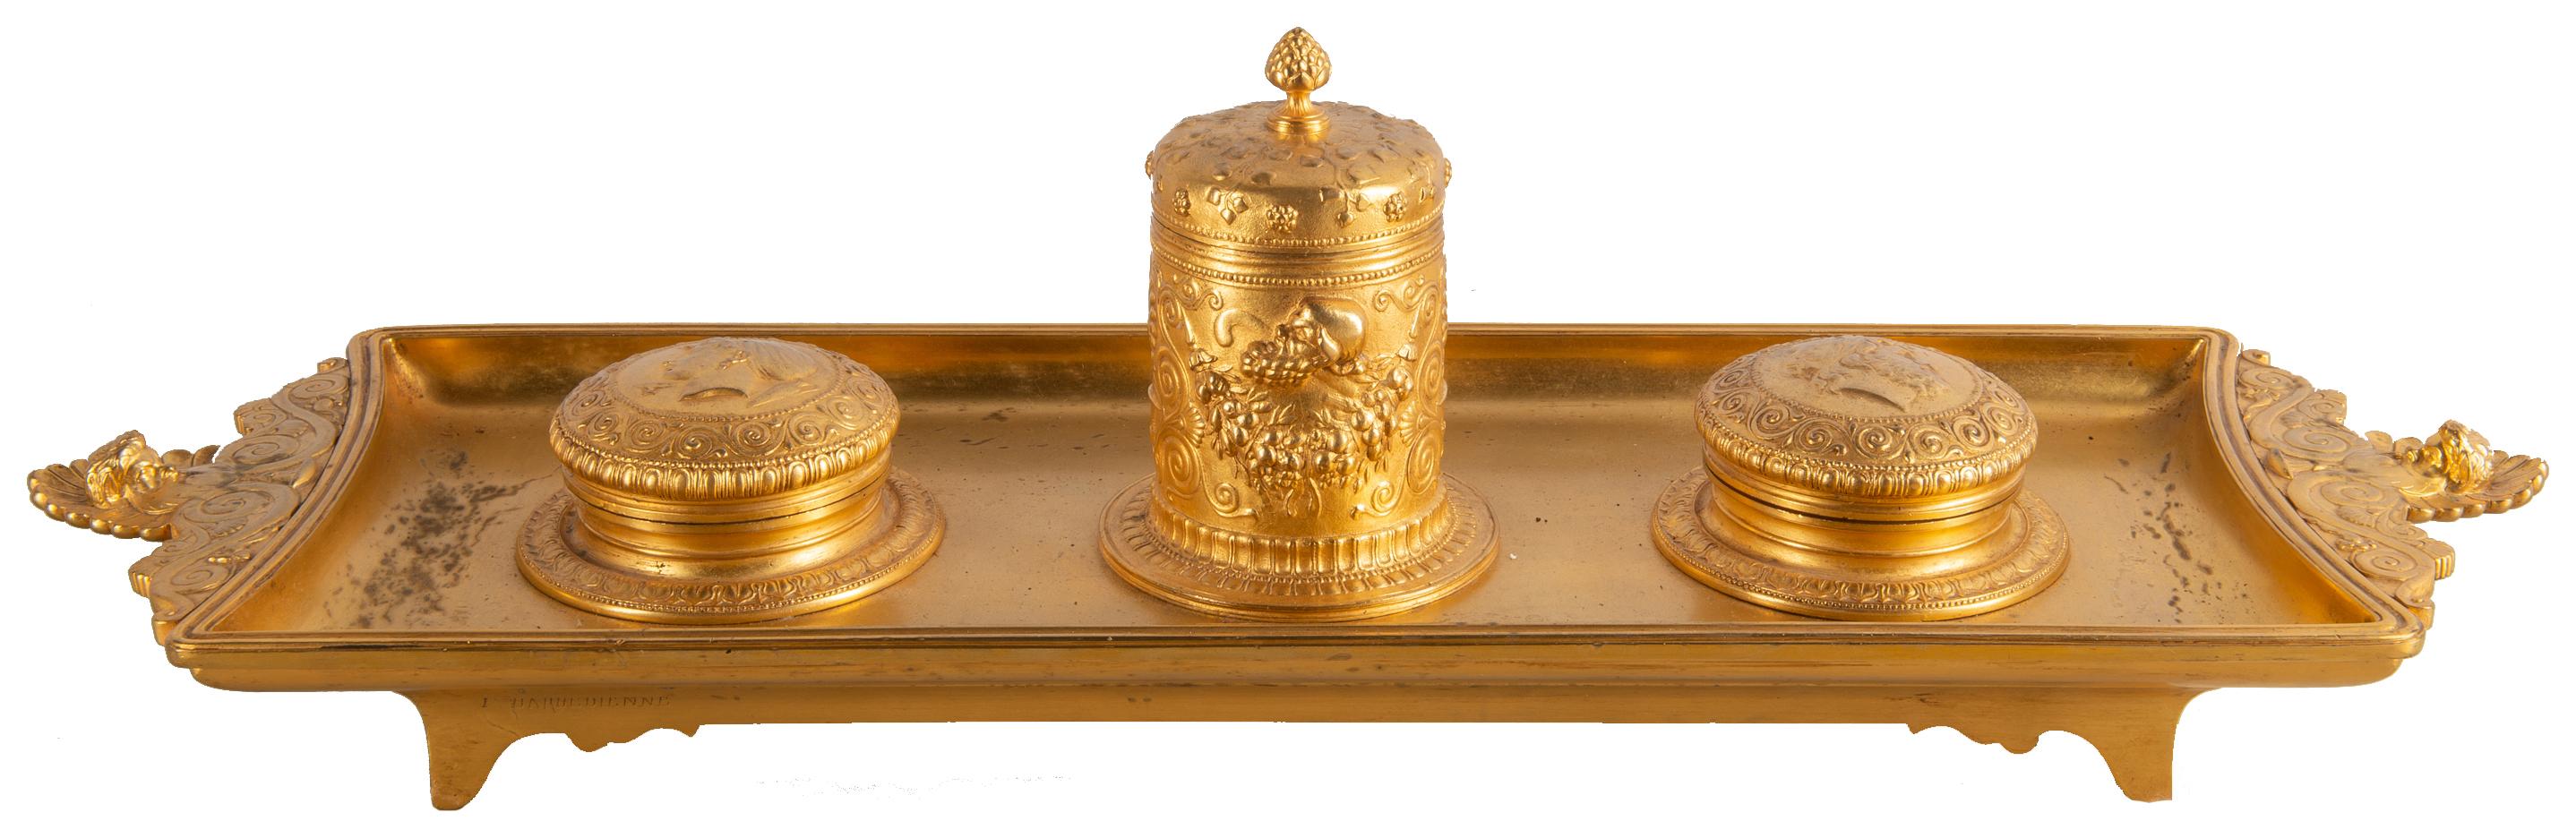 Eine gute Qualität des späten 19. Jahrhunderts Französisch vergoldet Ormolu Gran Tour beeinflusst vergoldet Ormolu Tintenfass, mit Klassifizierung Motive und römische Centurion Büste auf den Deckeln geprägt.
Gestempelt, Barbedienne.